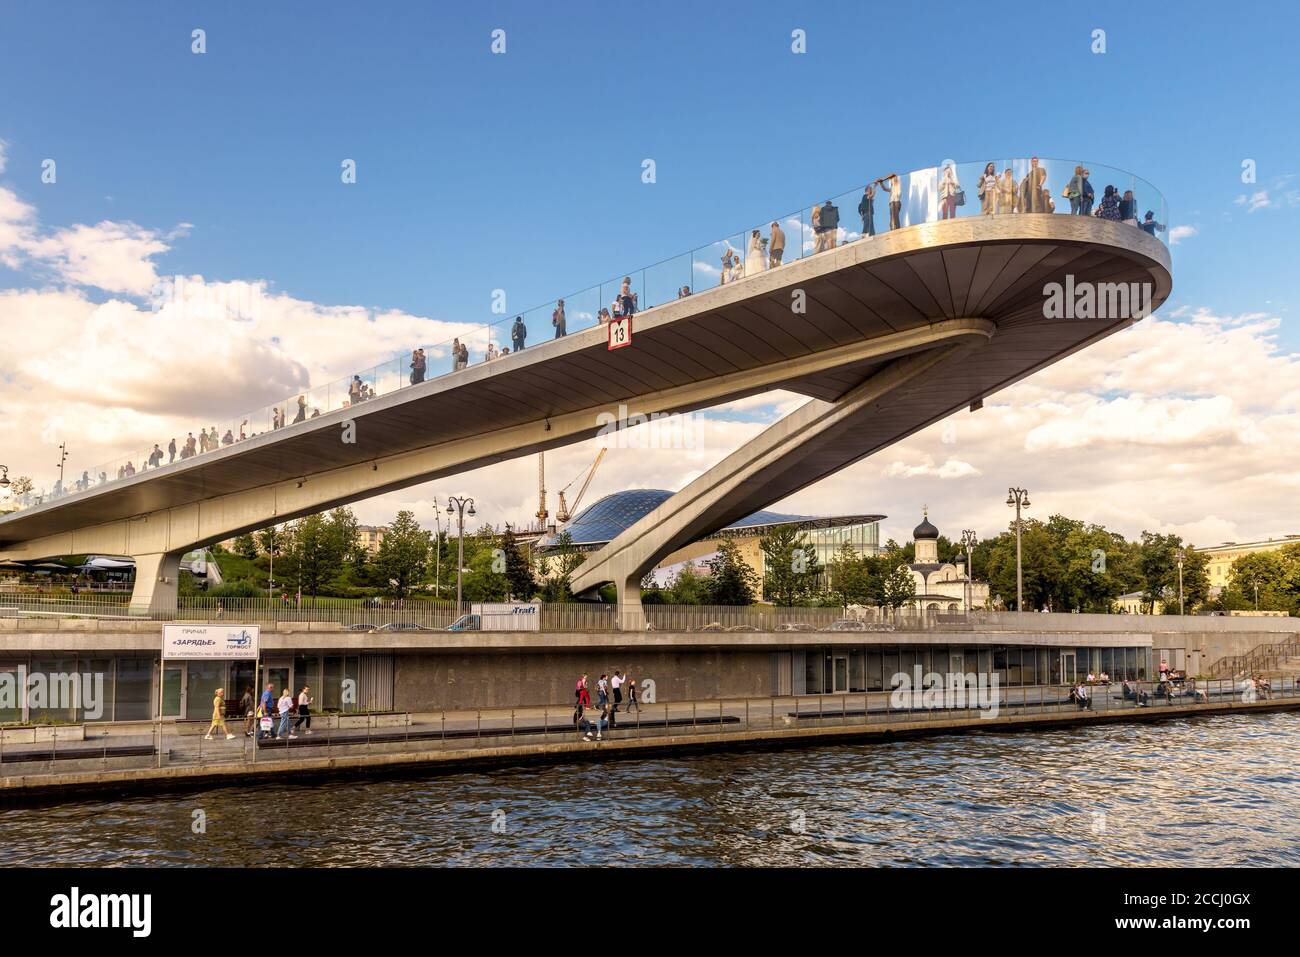 Moscou - 21 août 2020 : pont flottant au-dessus de la rivière Moskva dans le parc Zaryadye, Moscou, Russie. Zaryadye est une attraction touristique moderne de Moscou. Incroyable u Banque D'Images